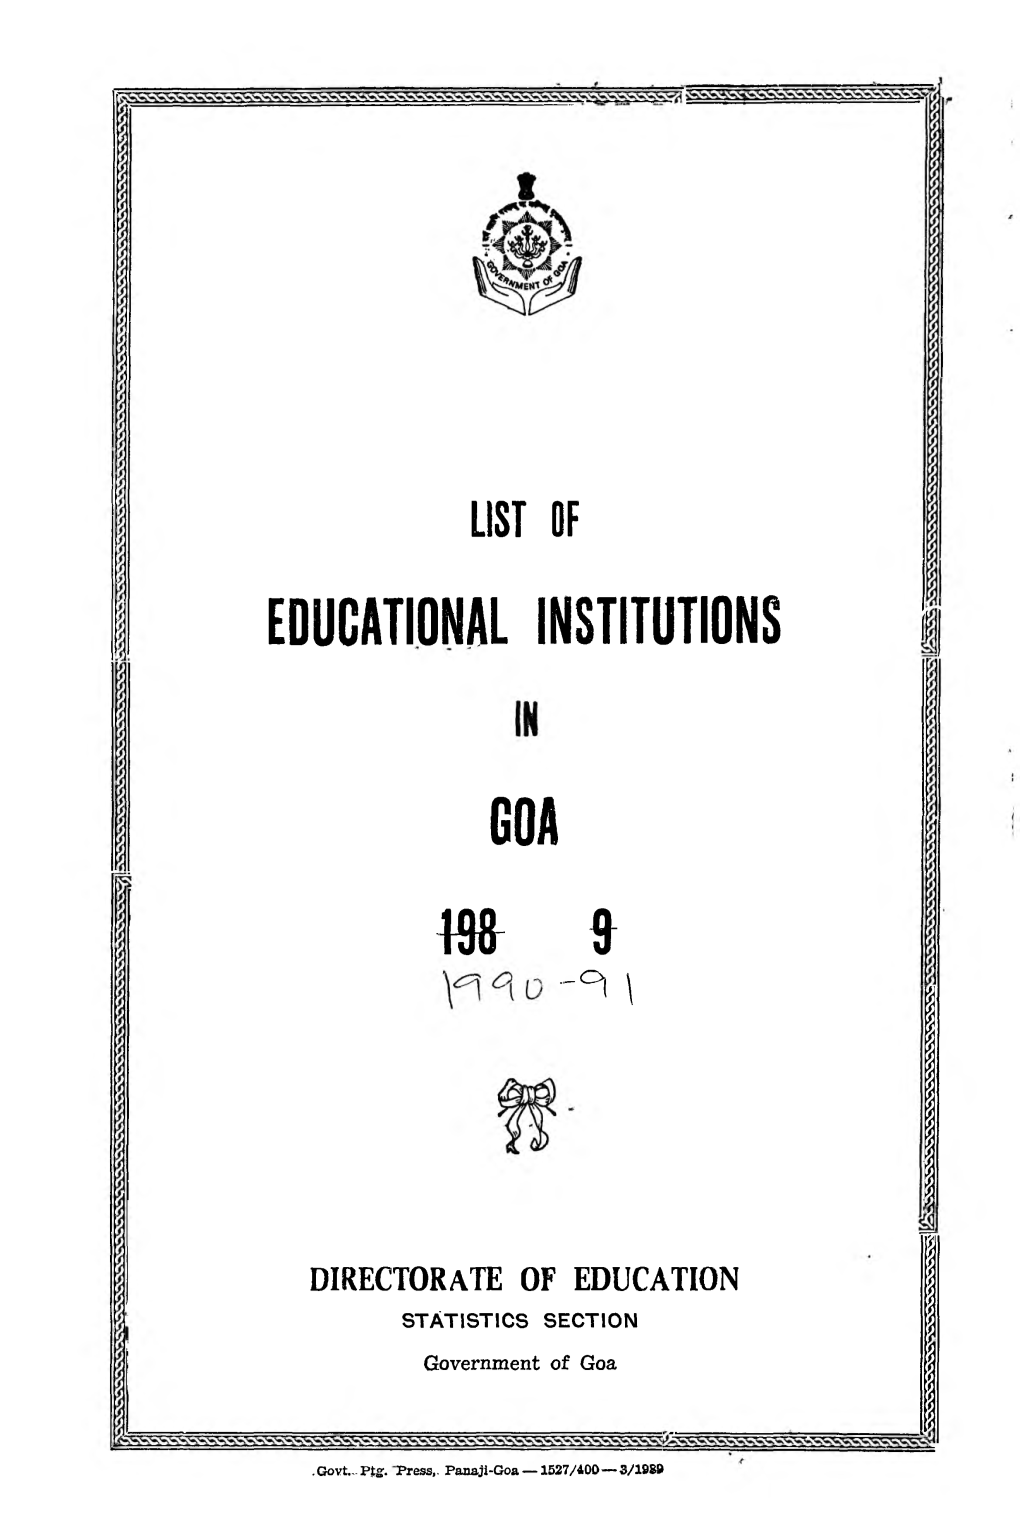 Educational Institutions Goa